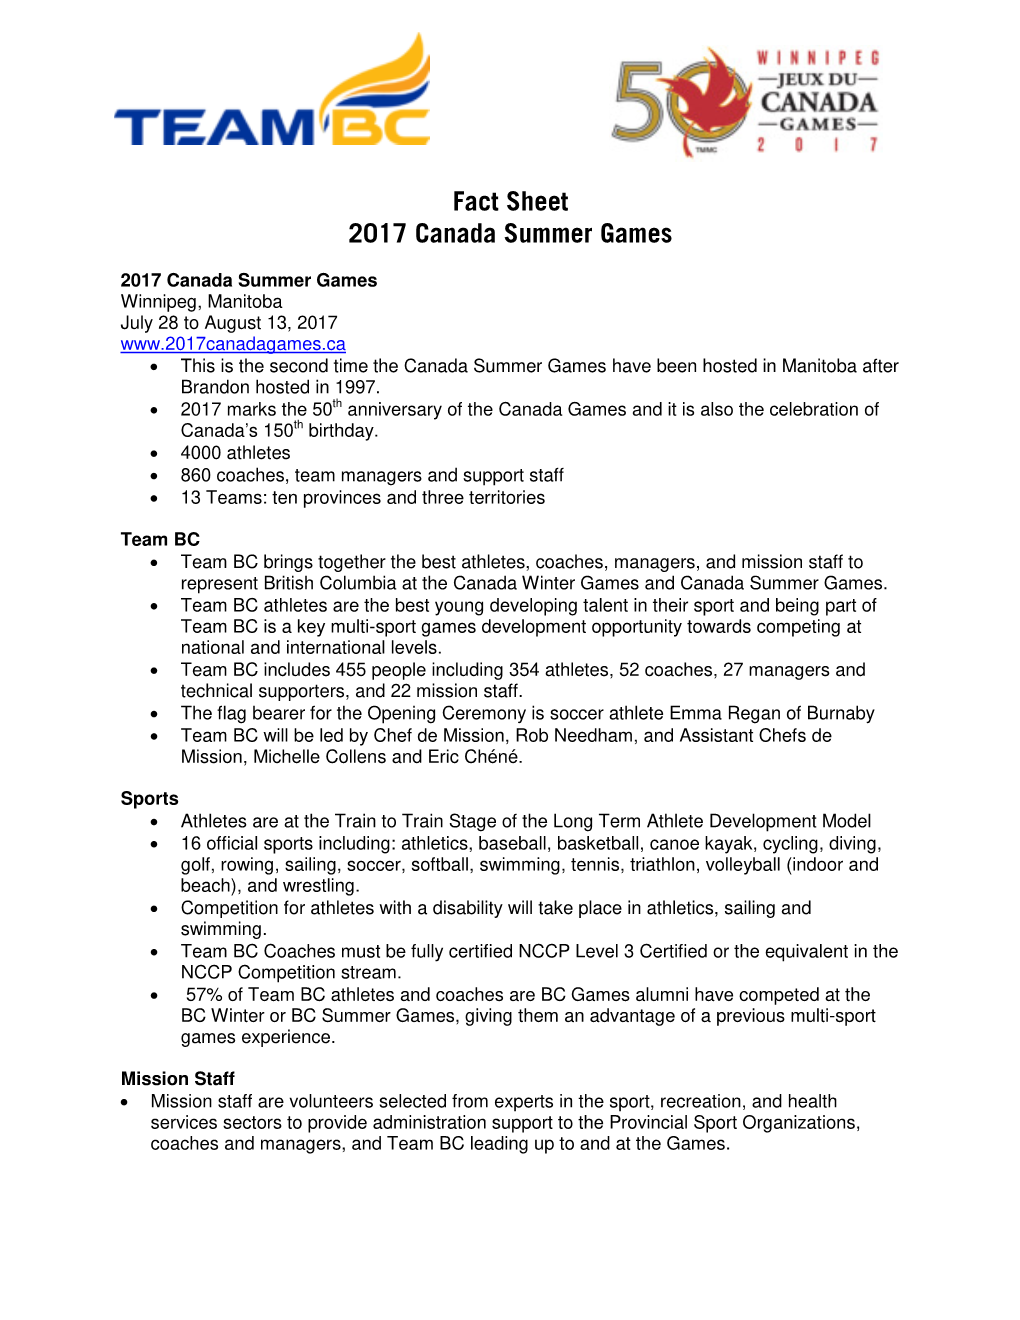 Fact Sheet 2017 Canada Summer Games